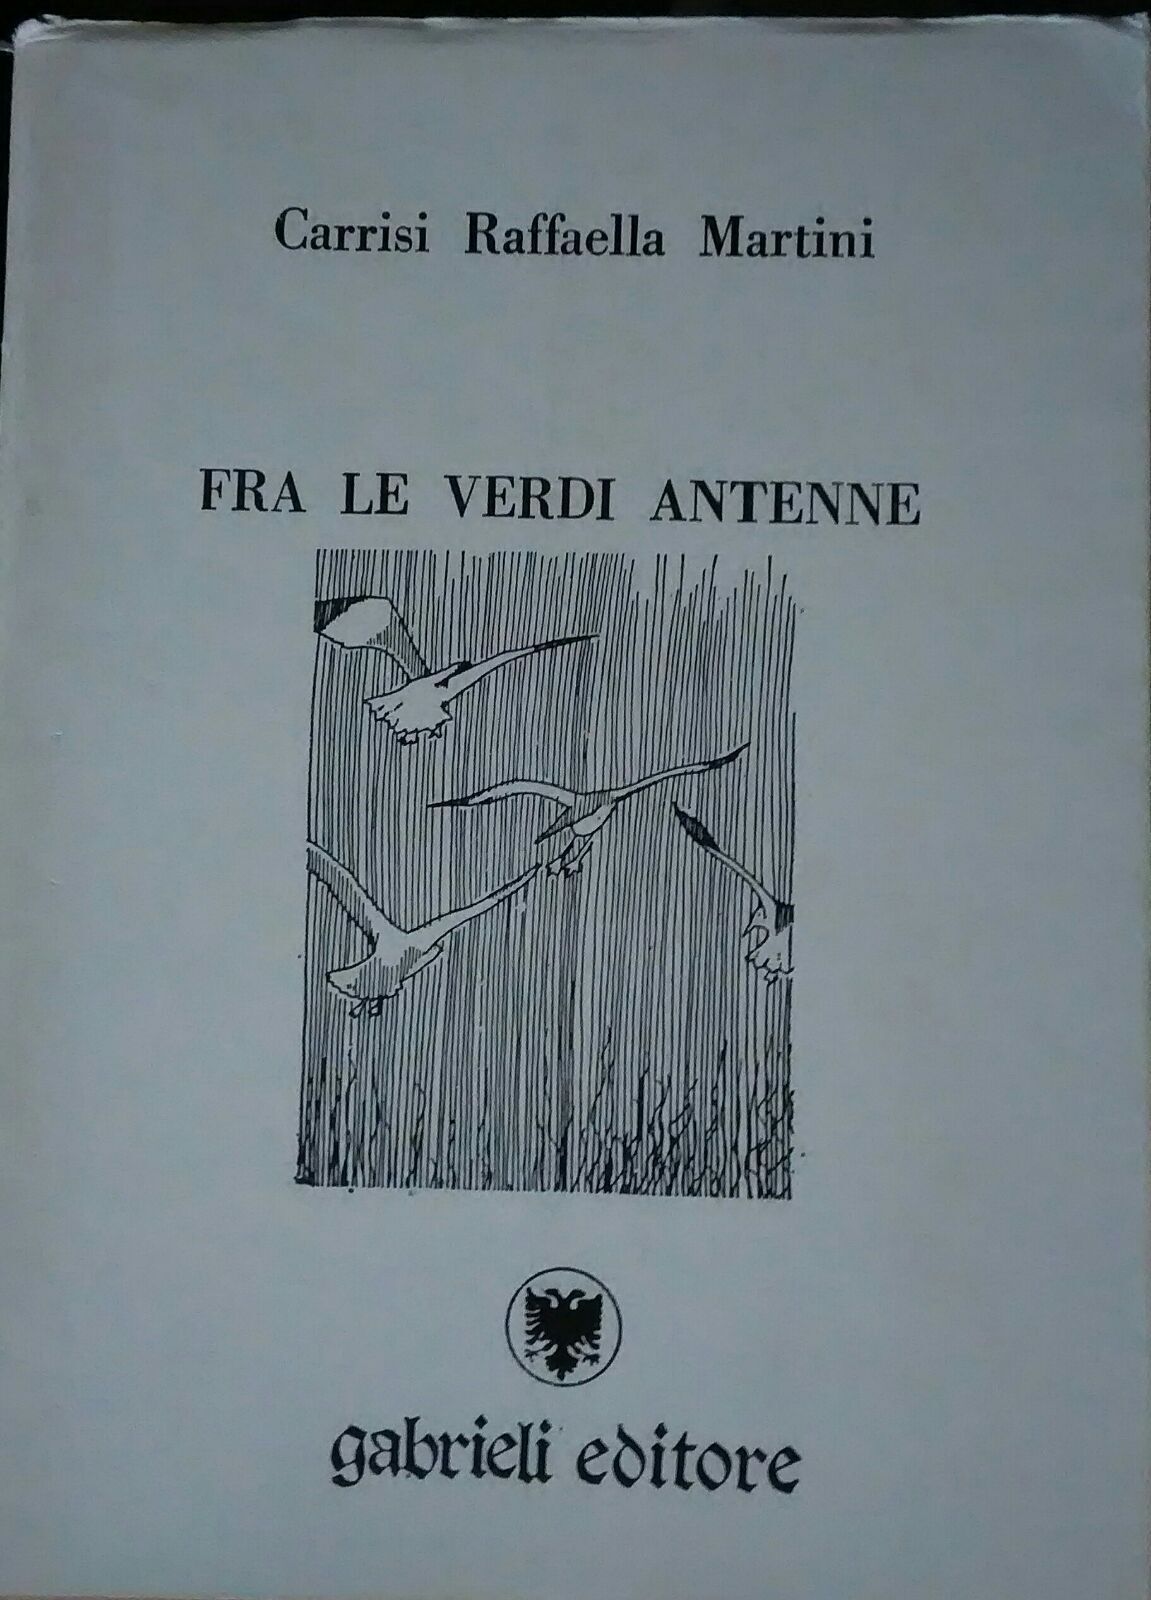 fra le verdi antenne-Carrisi Raffaella Martini,1989, Gabrieli editore - S